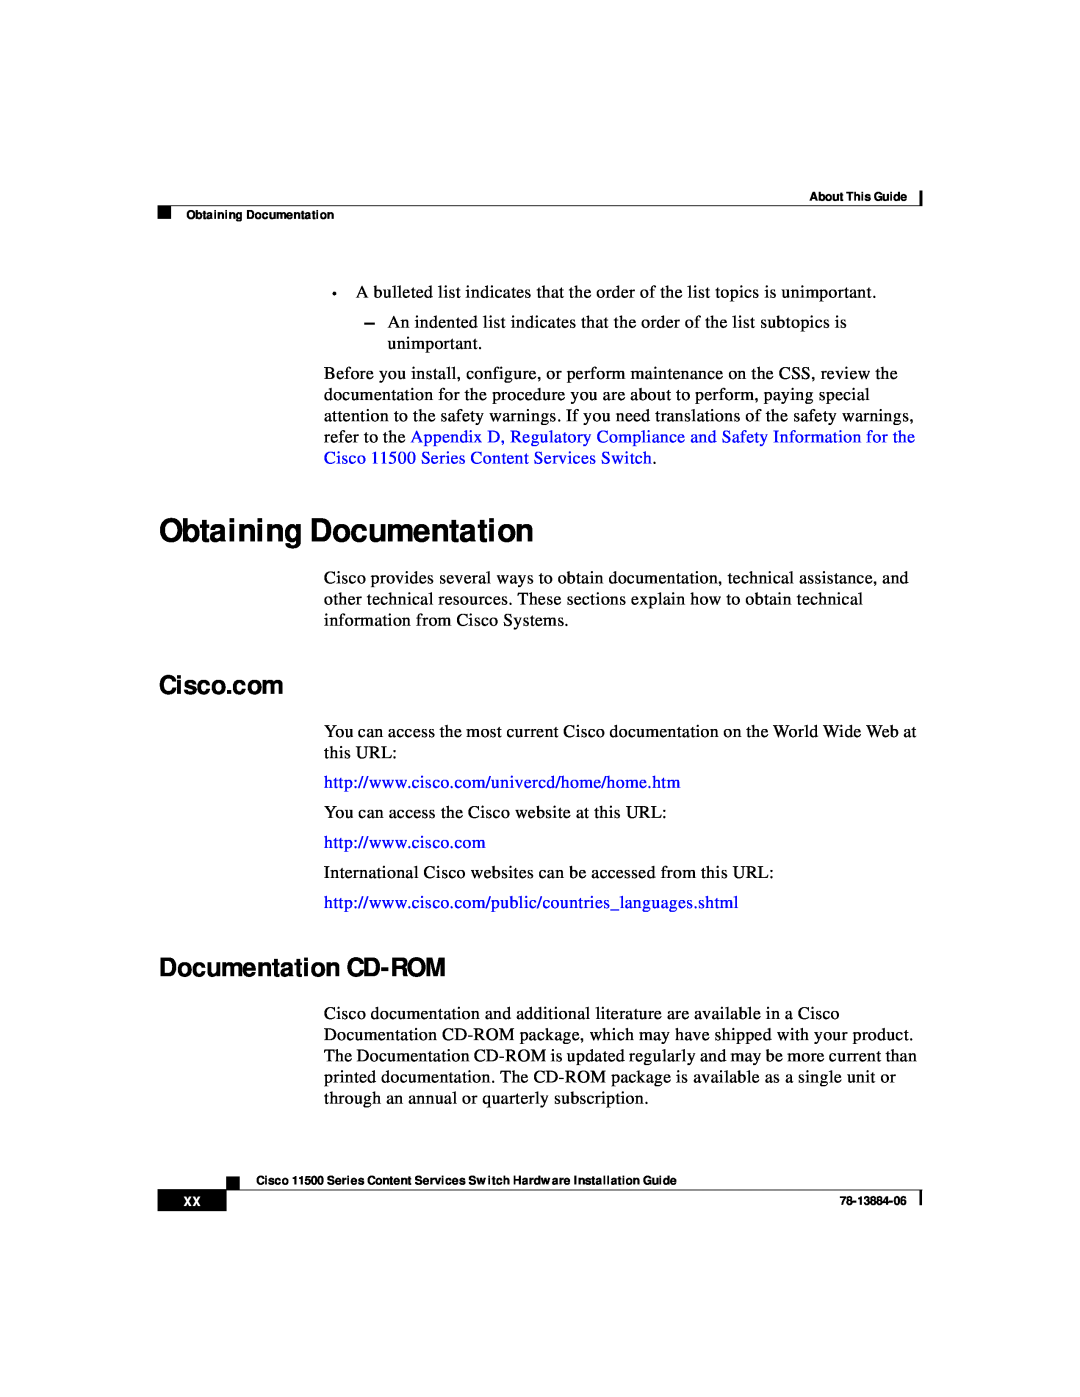 Cisco Systems 11500 Series manual Obtaining Documentation, Cisco.com, Documentation CD-ROM 